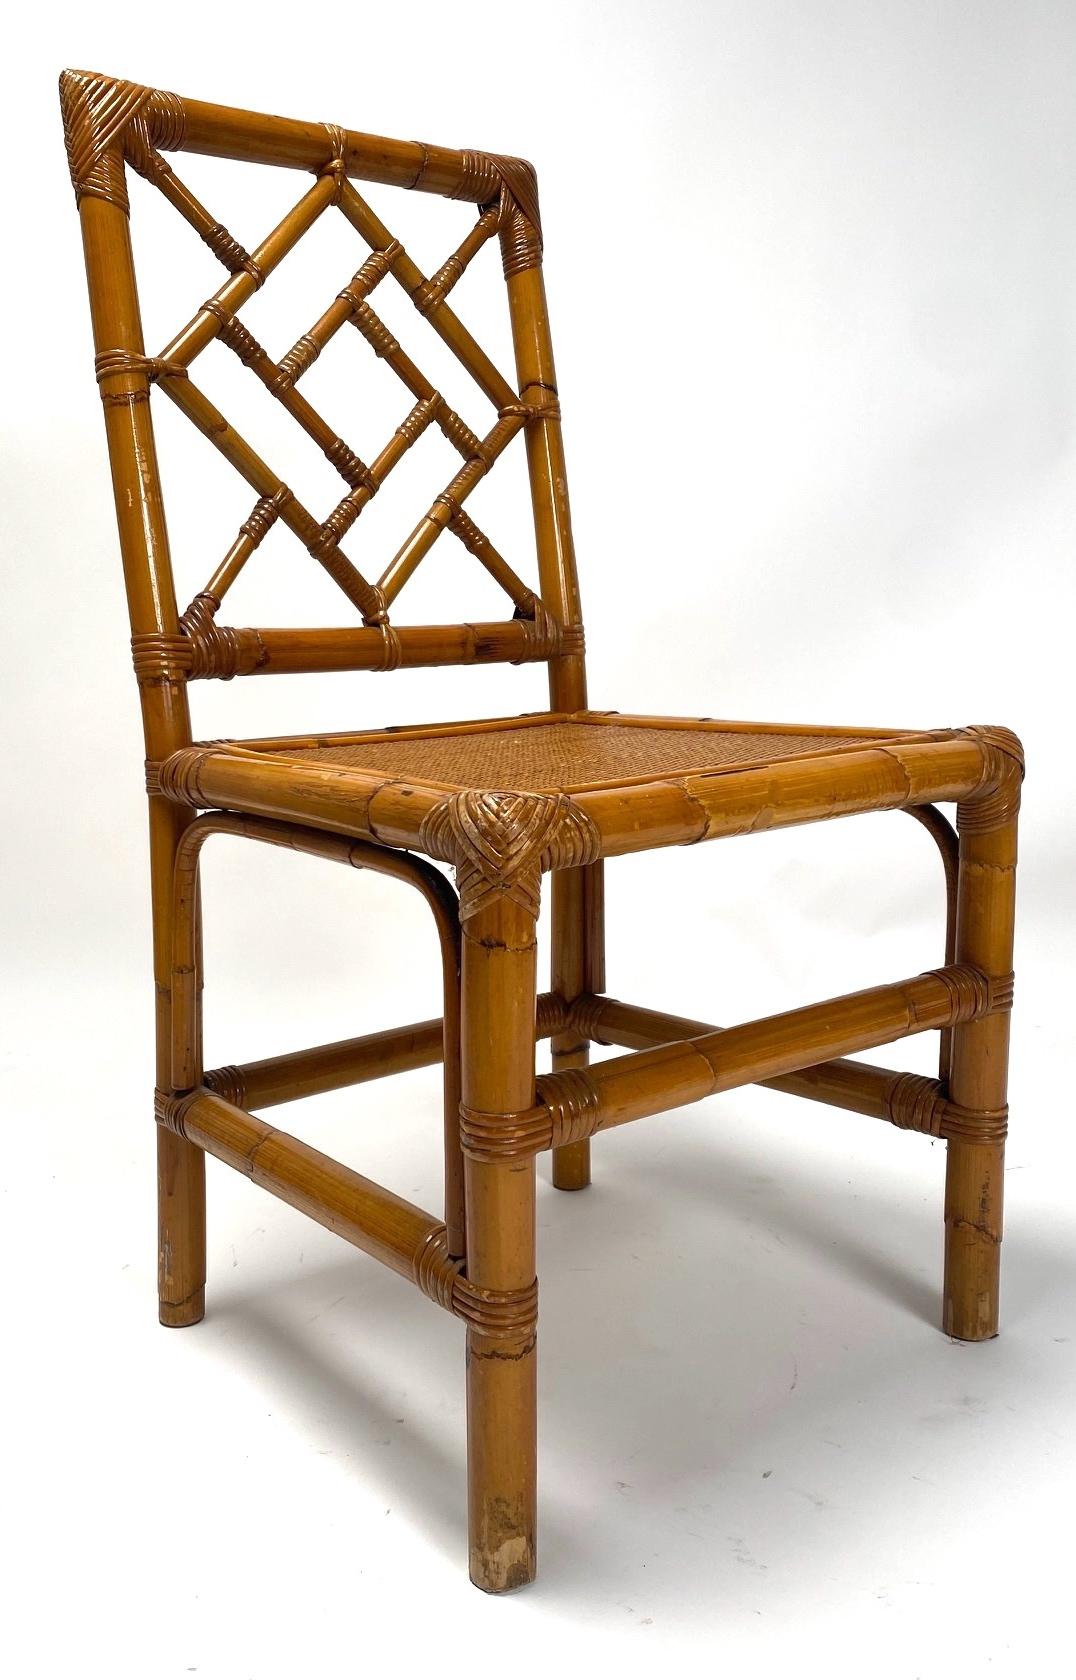 Ensemble de quatre chaises en bambou des années 1970 fabriquées par la société Vivai del Sud. Il s'agit de sièges confortables et raffinés qui s'intègrent parfaitement aussi bien dans une véranda que dans un contexte domestique.

